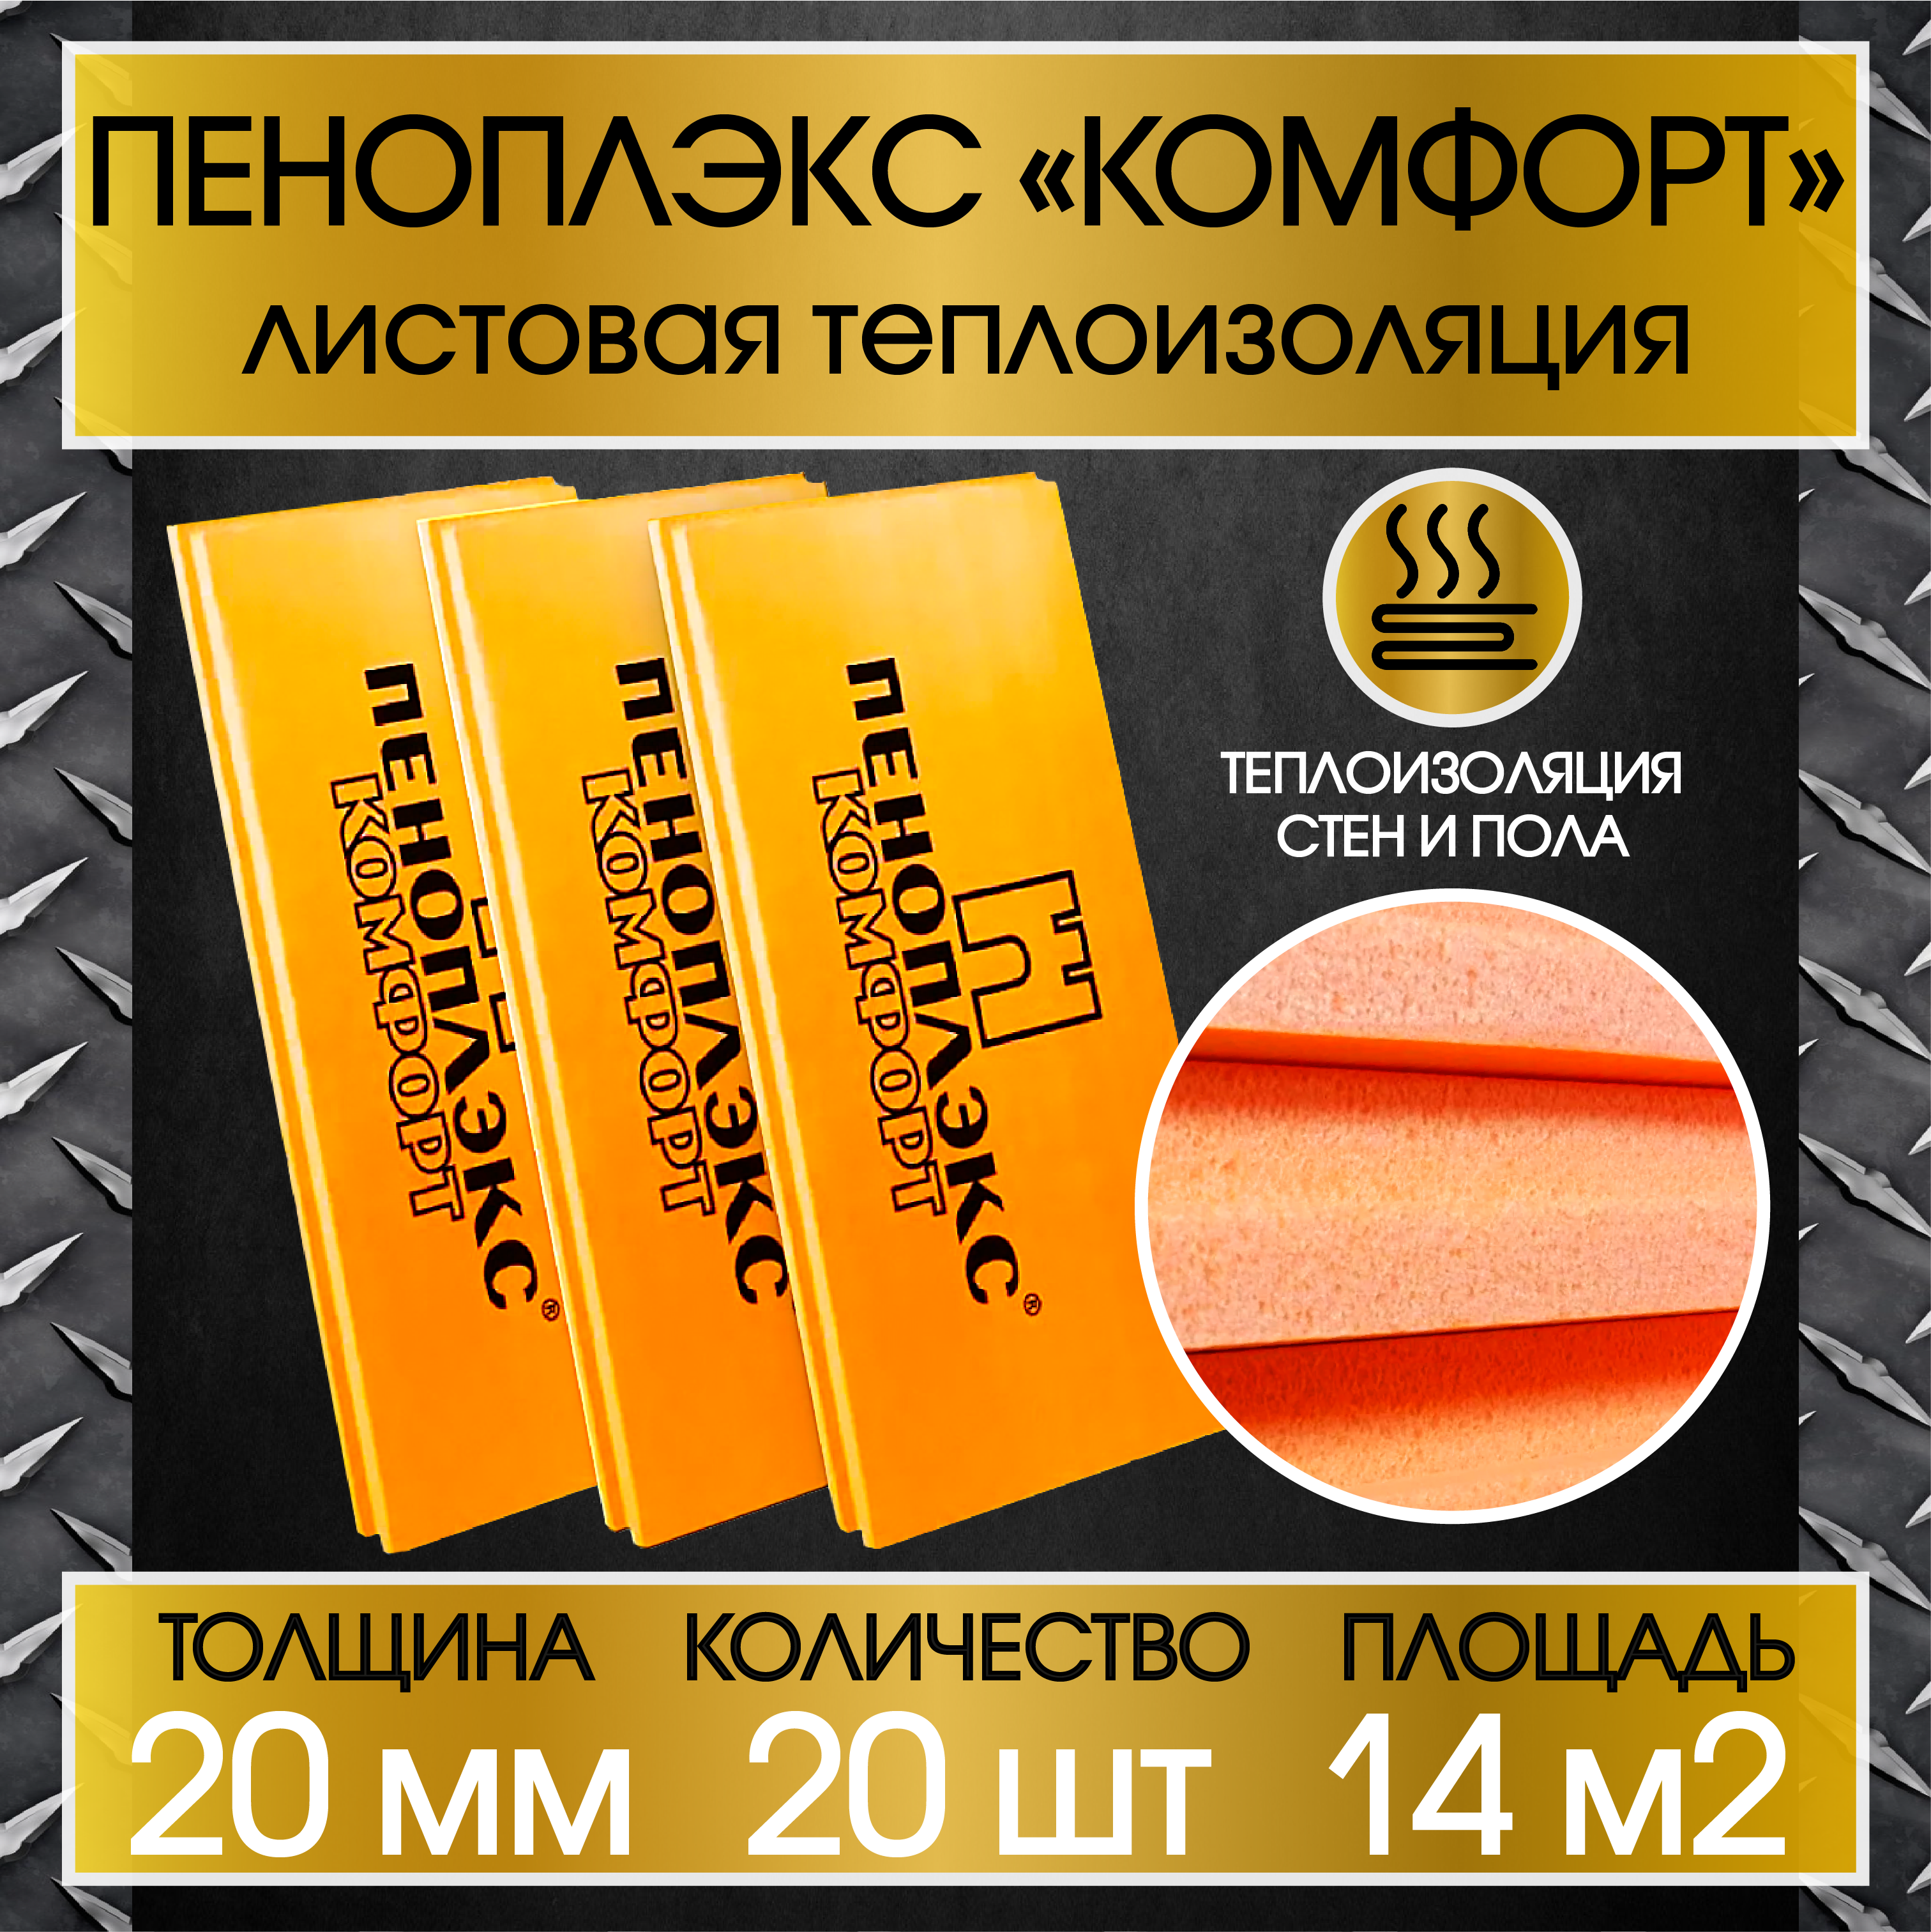 Утеплитель Пеноплэкс TU0-0001951 оранжевый 20 мм - фото №1